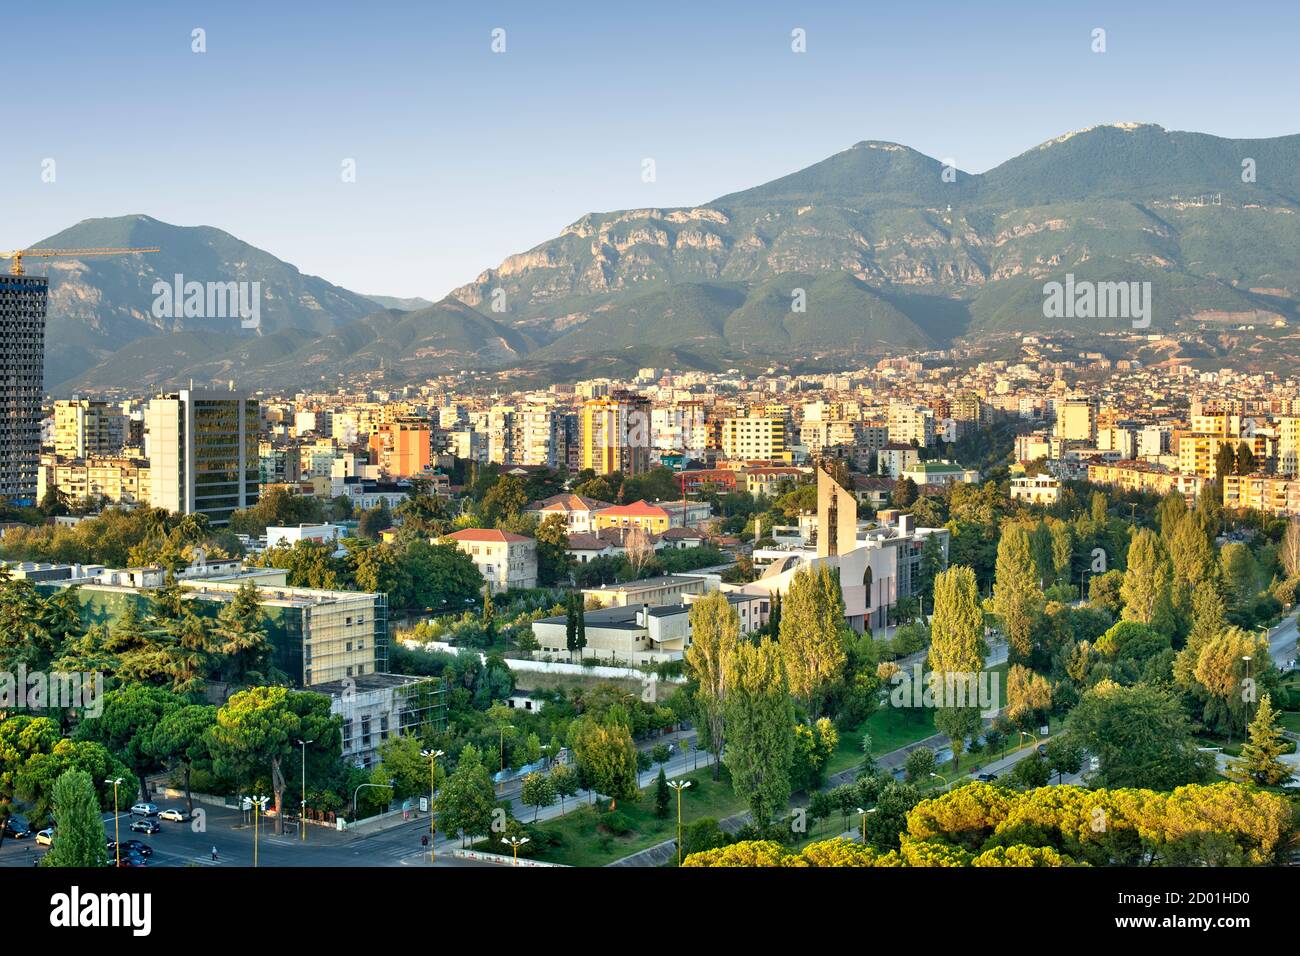 View across the city of Tirana, the capital of Albania. Stock Photo